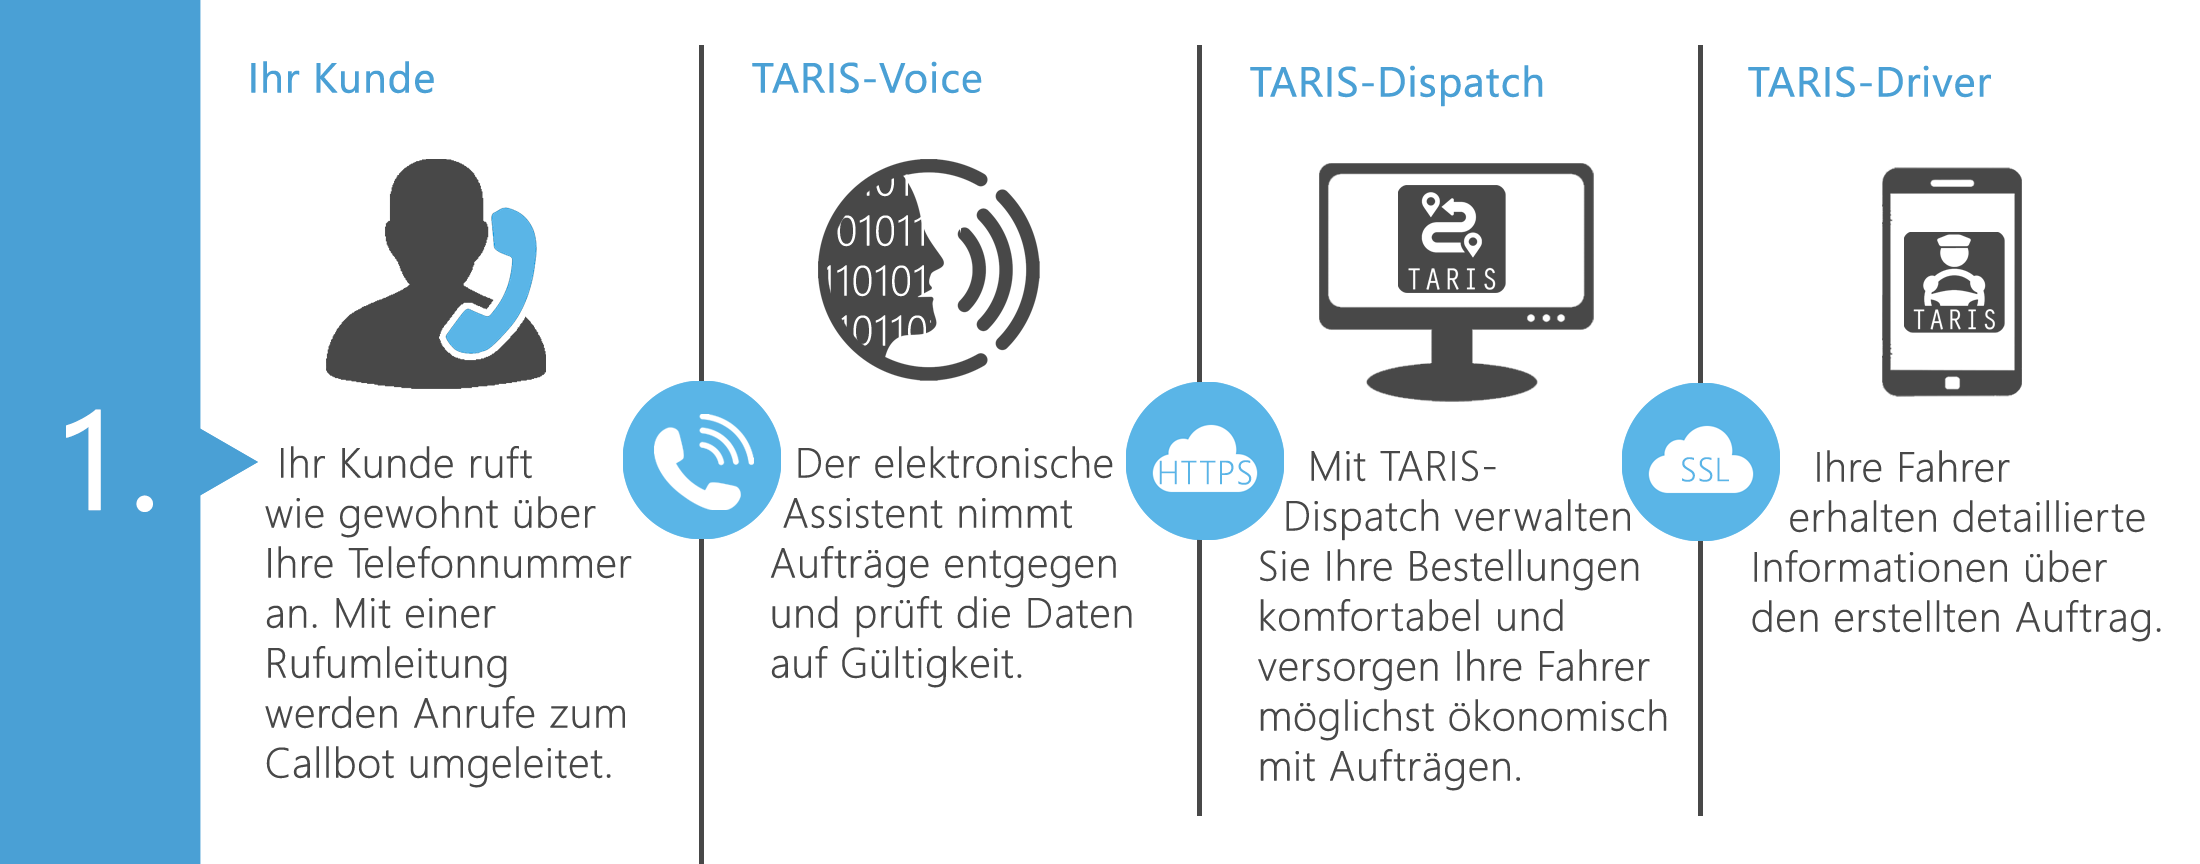 TARIS Voice Ablaufdiagramm